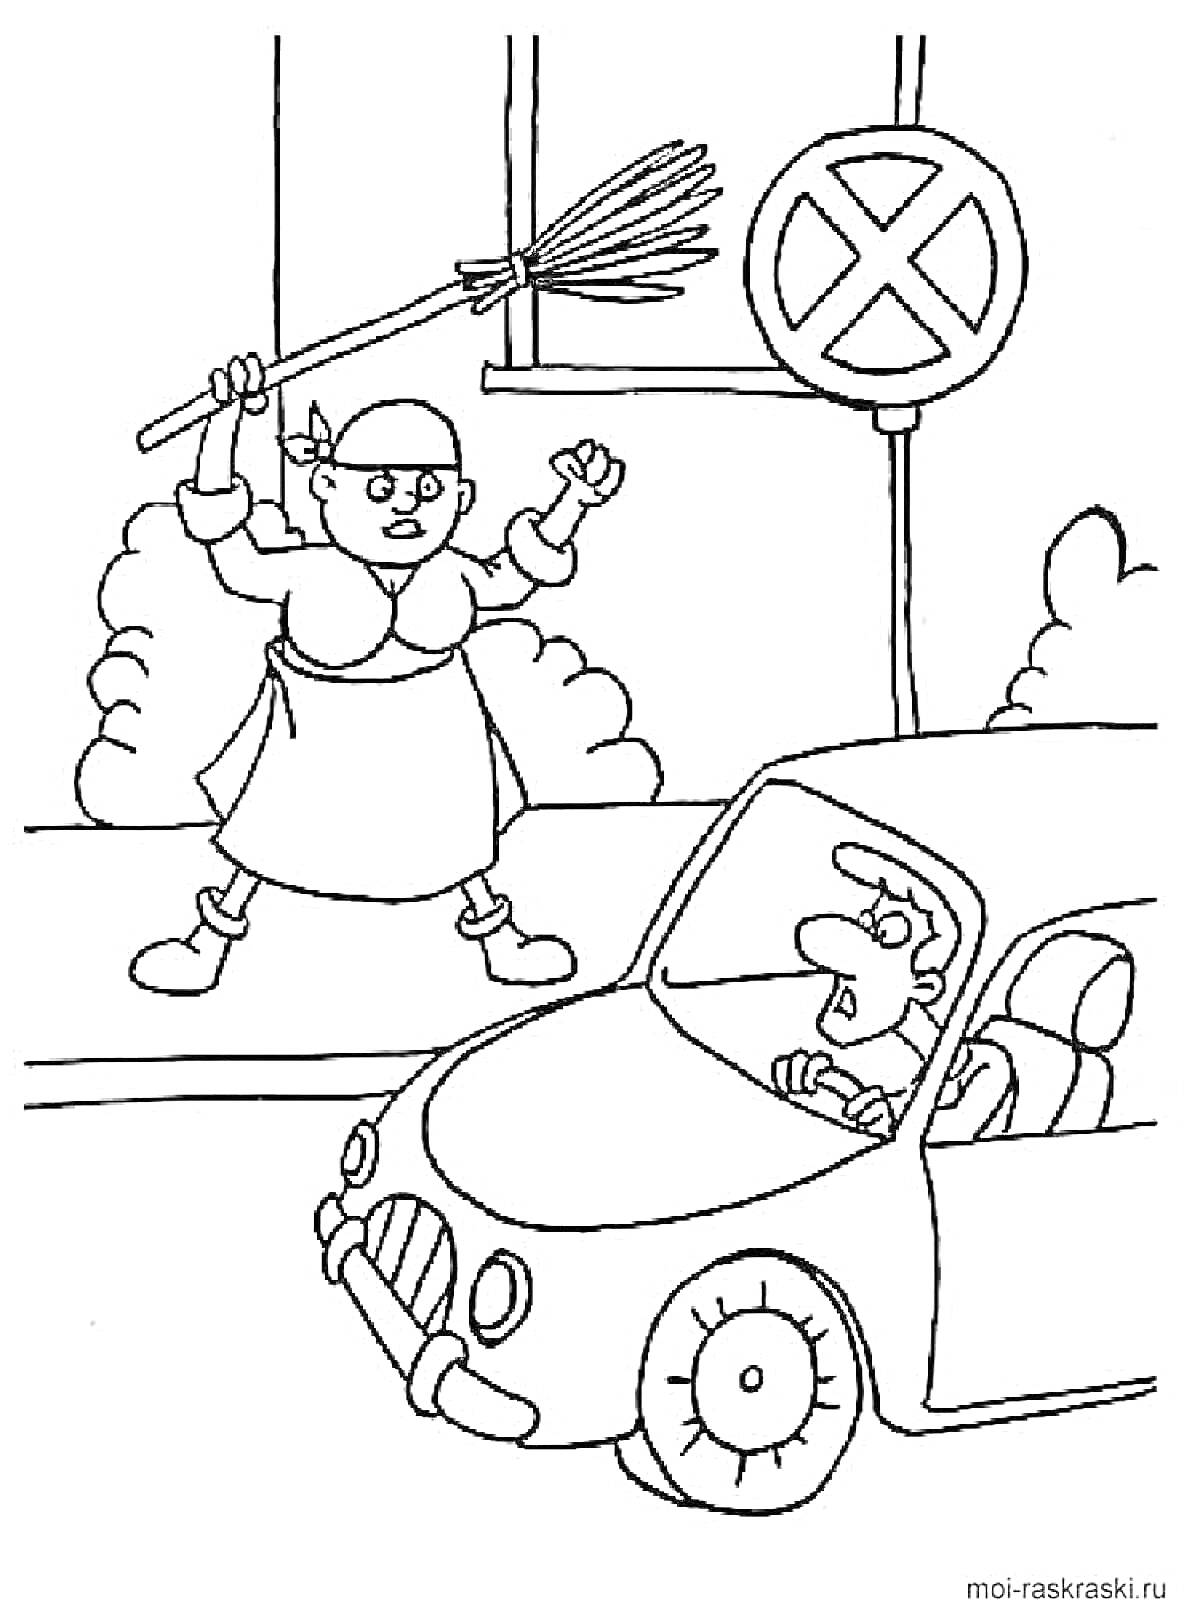 Женщина с метлой и знак 'Остановка запрещена' рядом с автомобилем